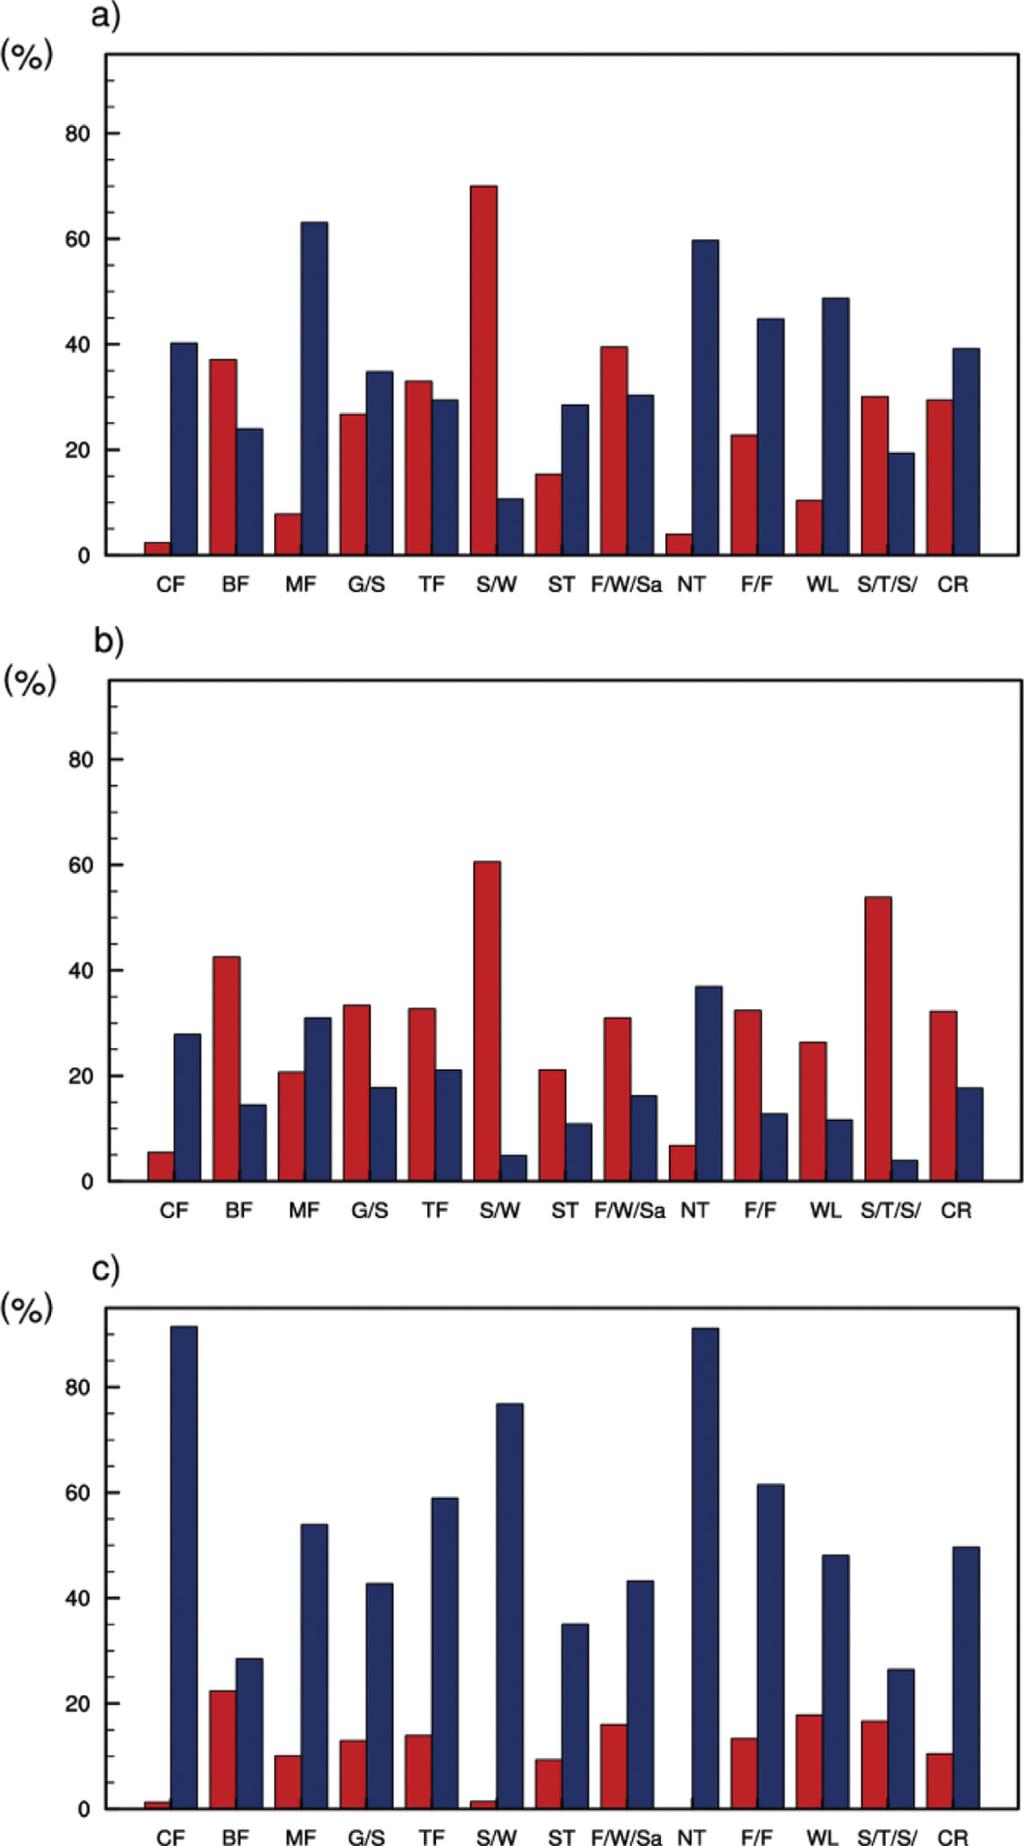 172 기후변동성에따른육상탄소순환의반응 Fig. 10. Percentage (%) distribution of positive (blue bars) and negative (red bars) correlation at 30 o latitude intervals in crop regions. 게나타났다 (Figs. 10a, b).